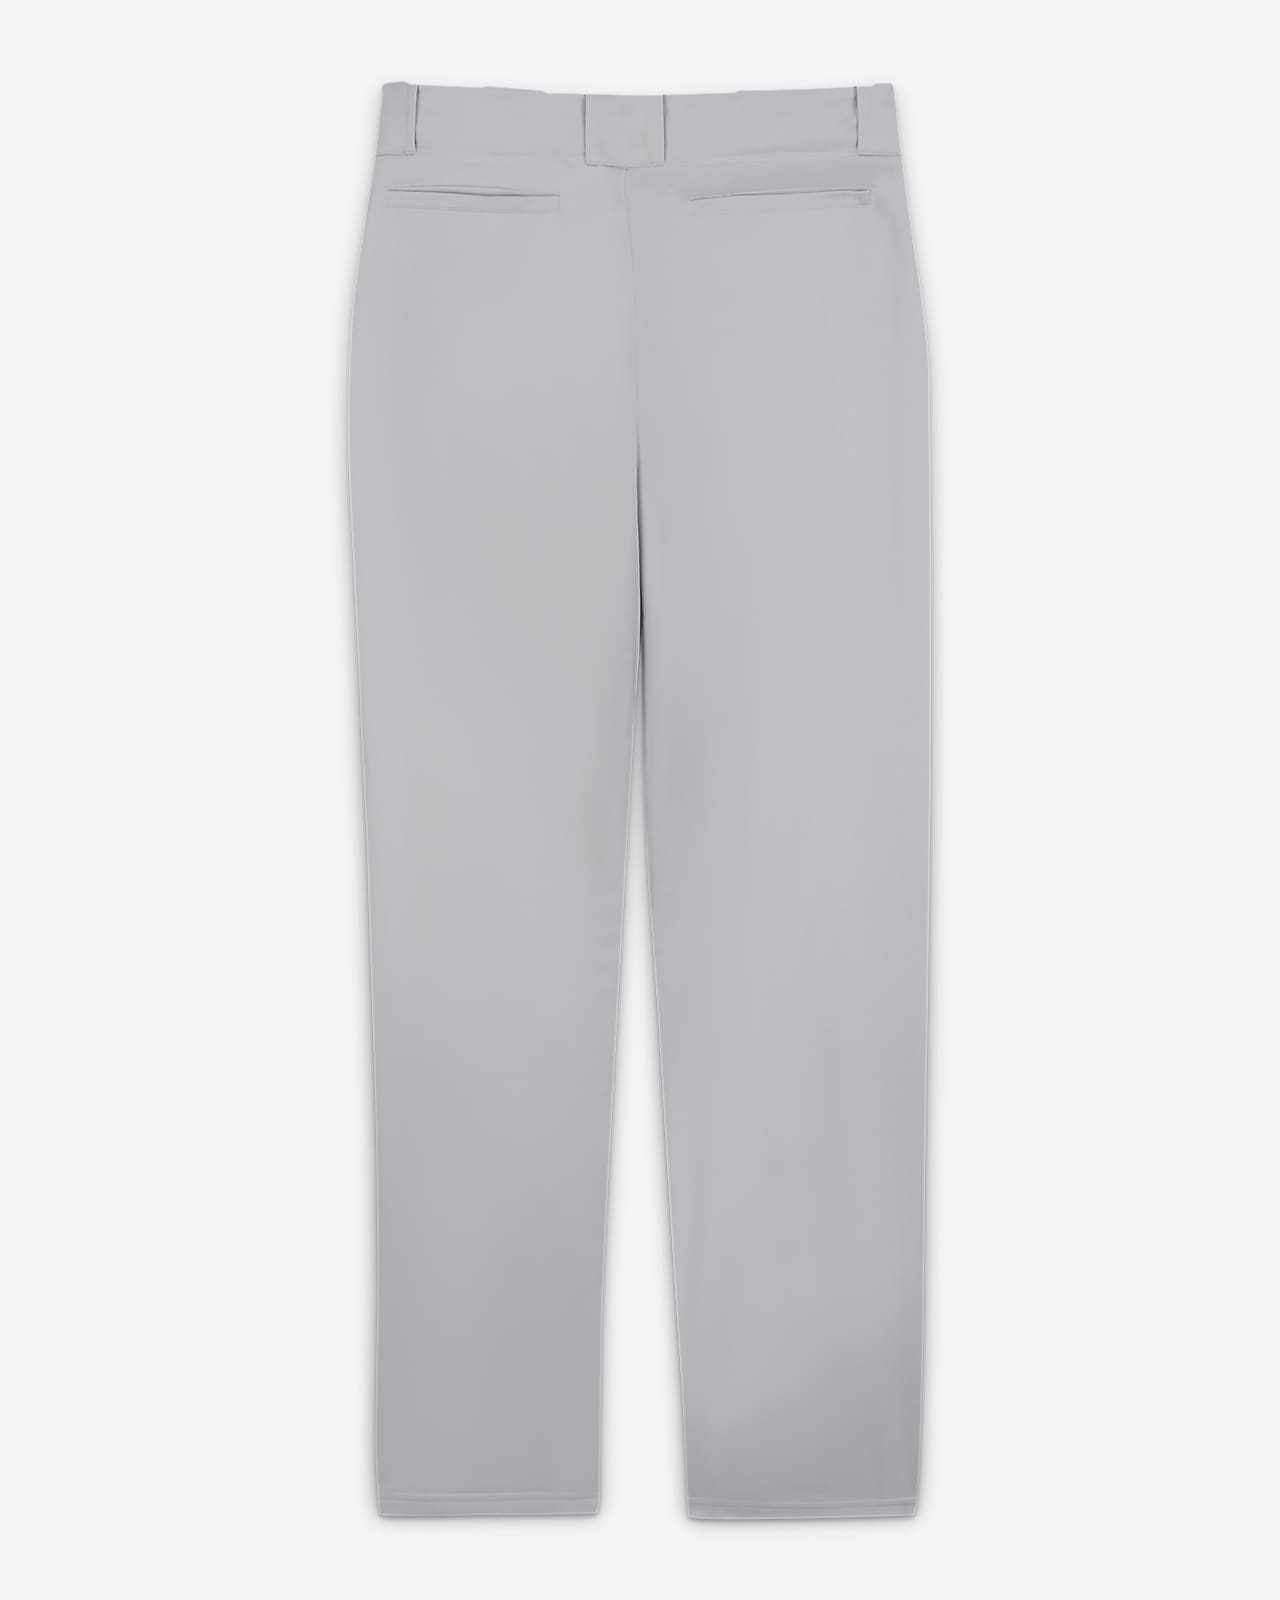 Nike Men's Core Baseball Pants Grey XL